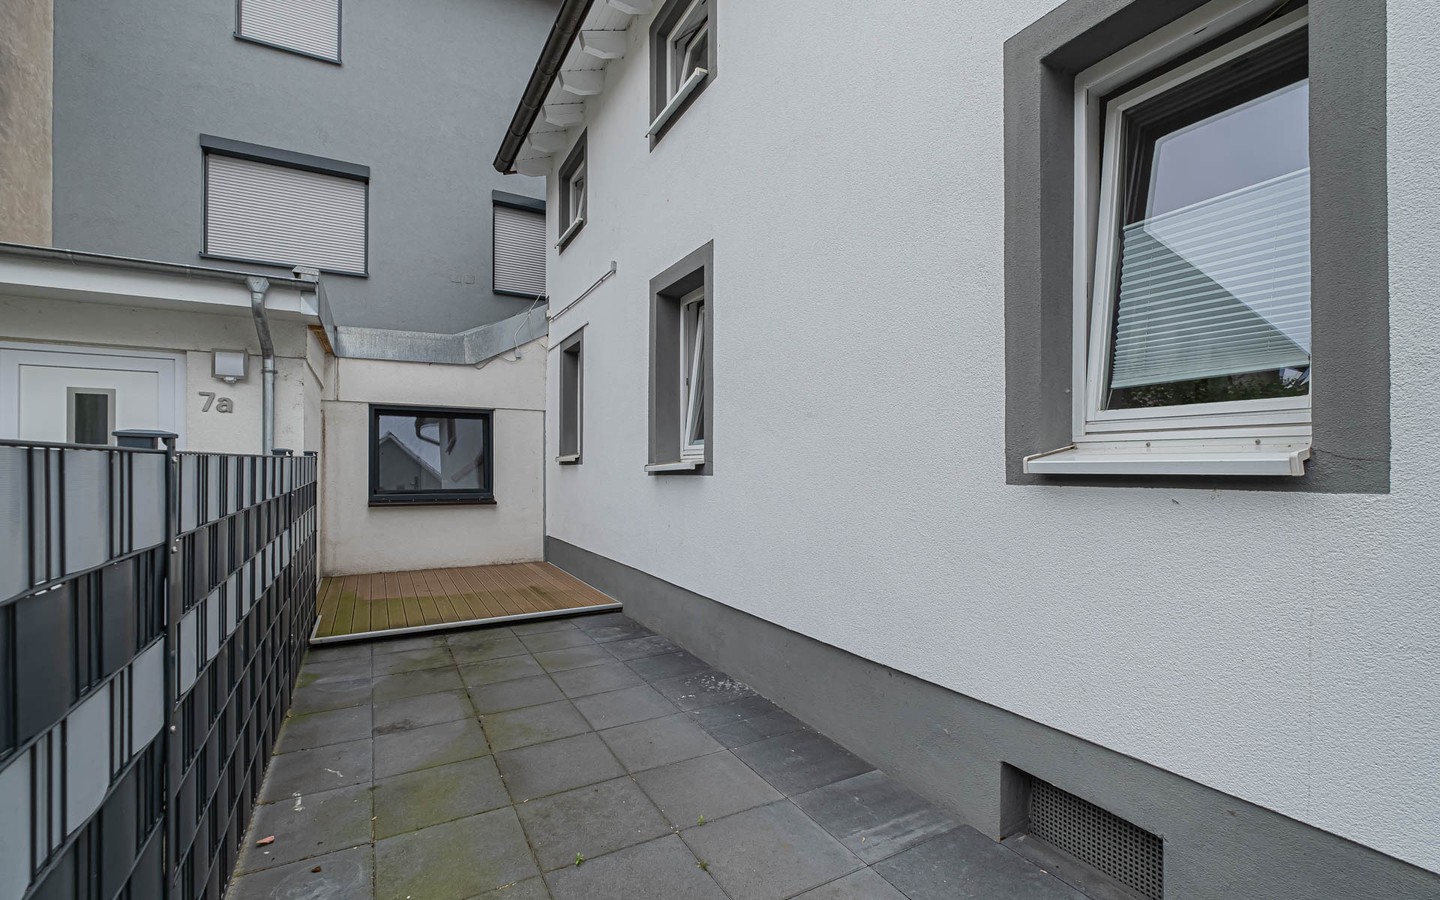 Hof - Klein aber fein. Ein kleines Haus mit Terrasse in ruhiger Lage.